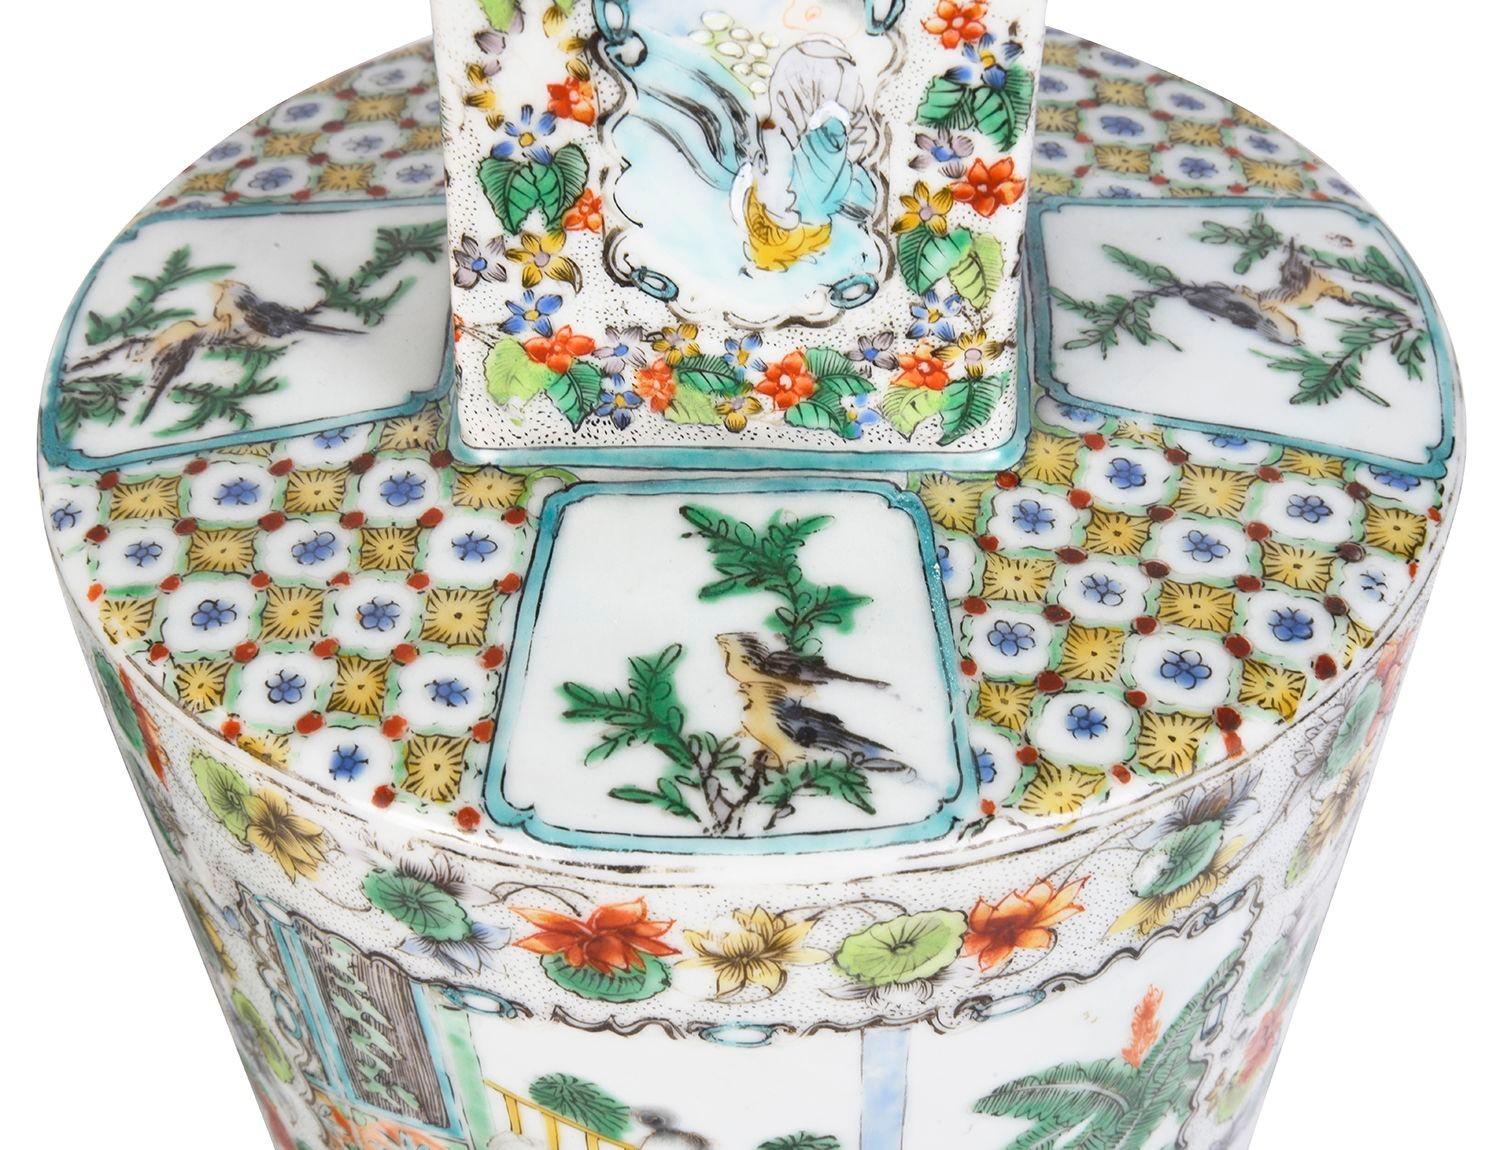 Paire de vases en famille verte chinoise de la fin du XIXe siècle, très décoratifs et élégants, avec des panneaux insérés peints à la main représentant des scènes d'intérieur chinoises classiques, au milieu de bordures florales et feuillues.

Nous